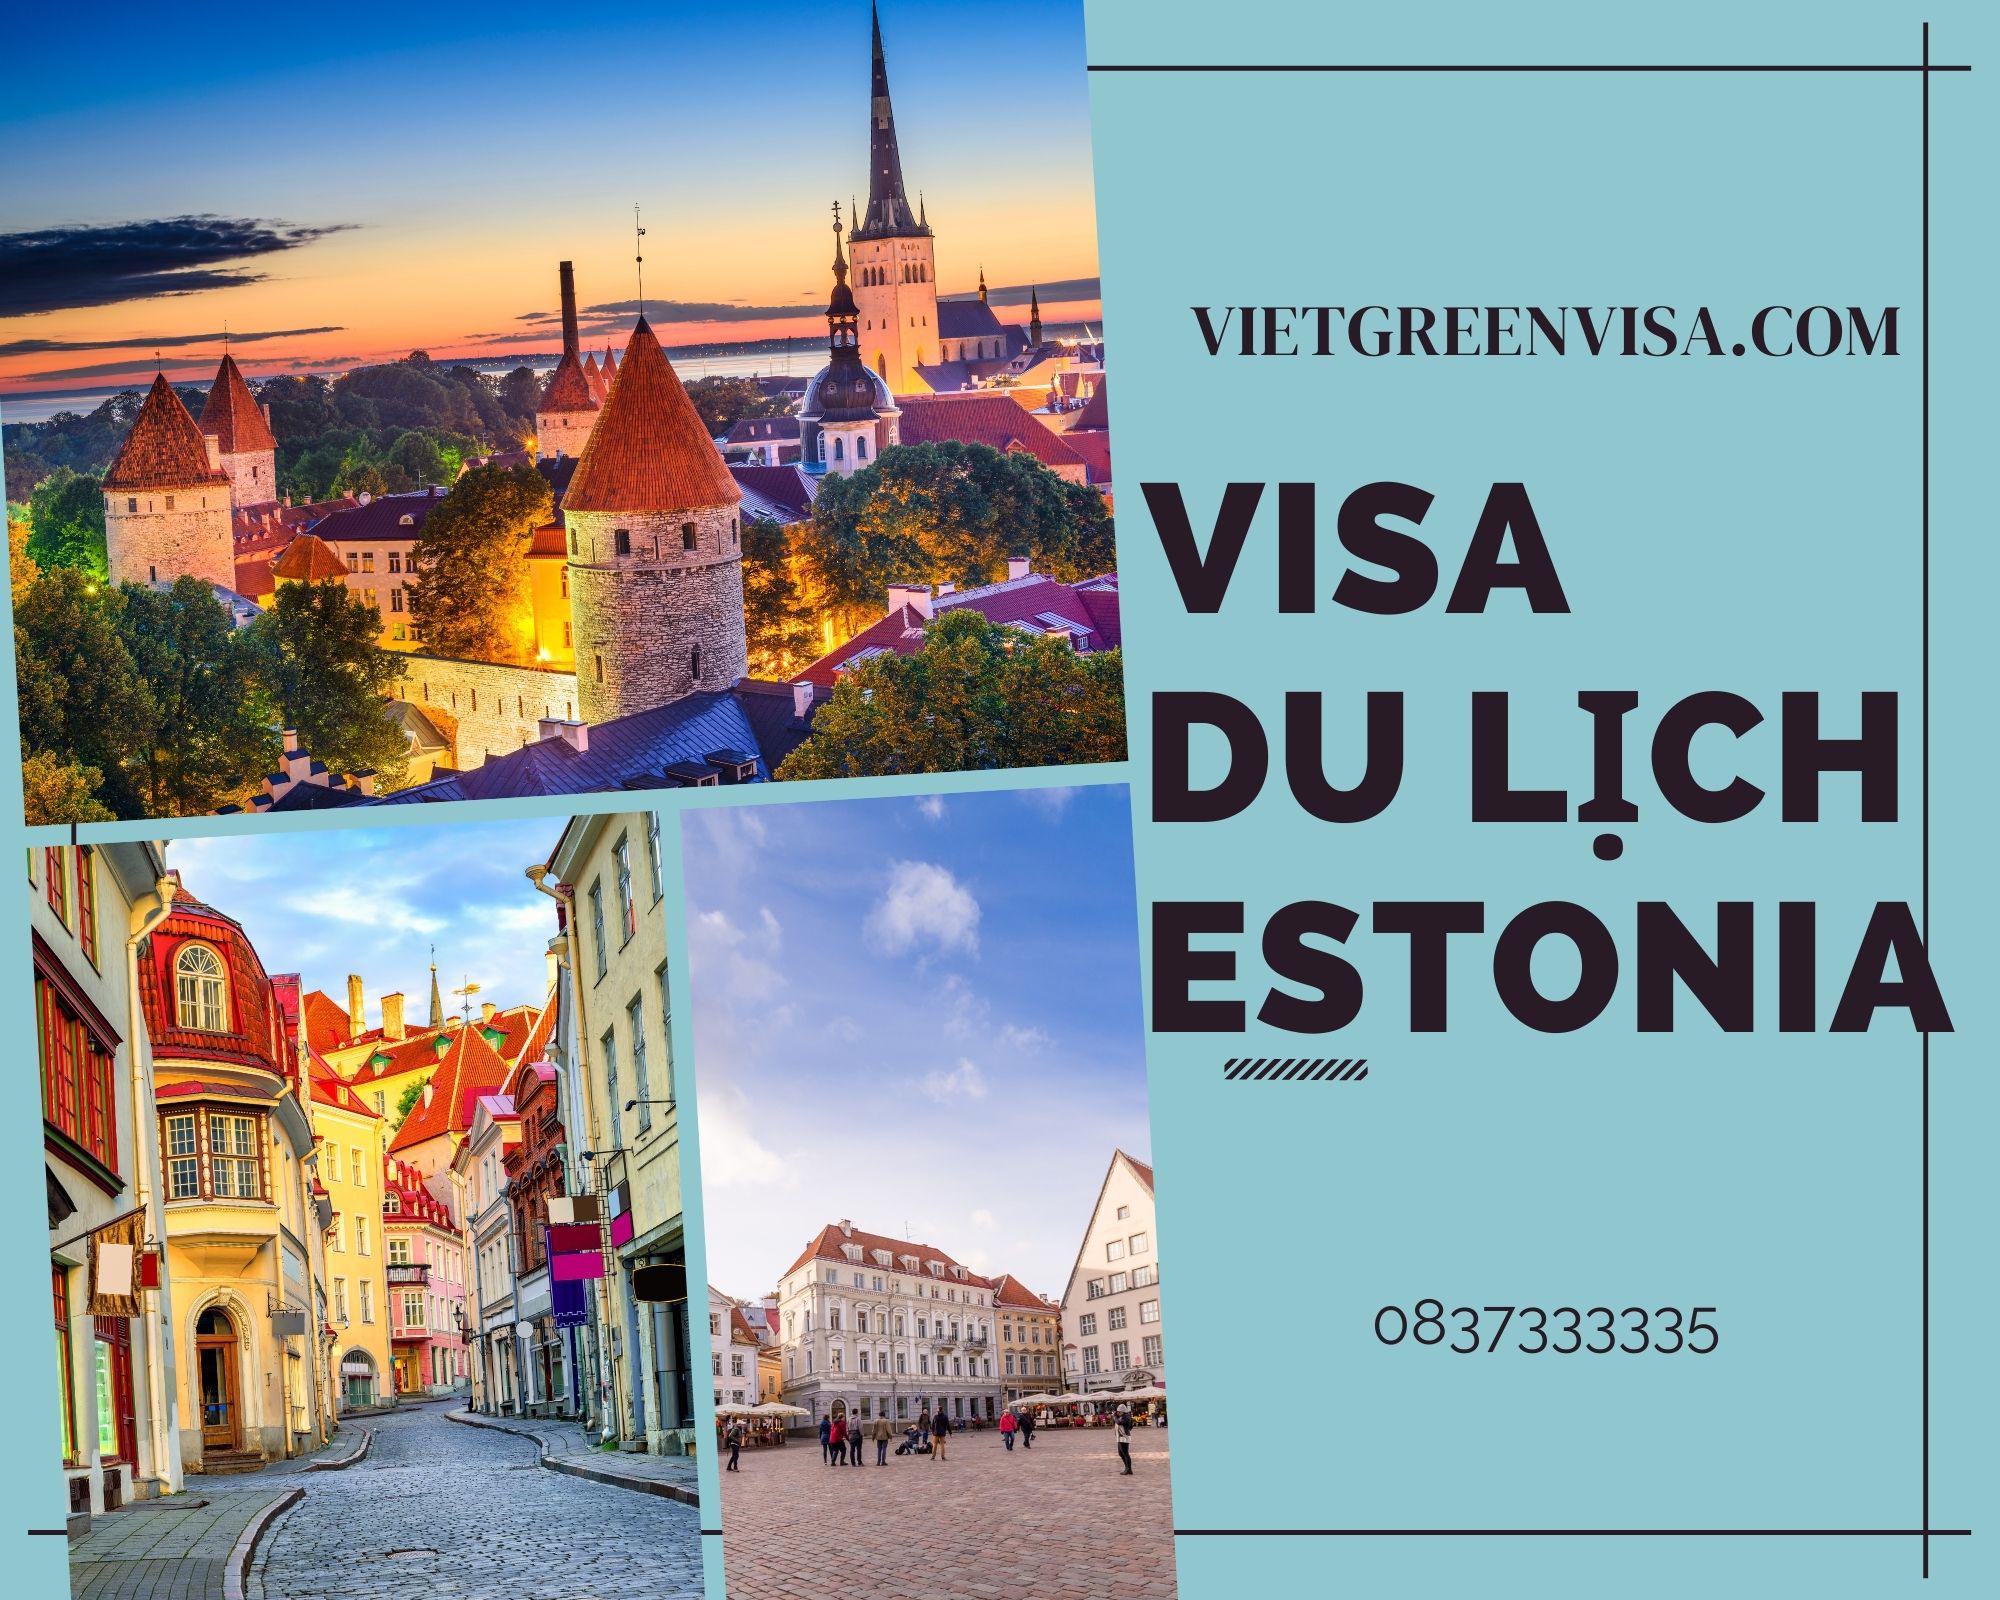 Dịch vụ hỗ trọ xin visa du lịch Estonia trọn gói